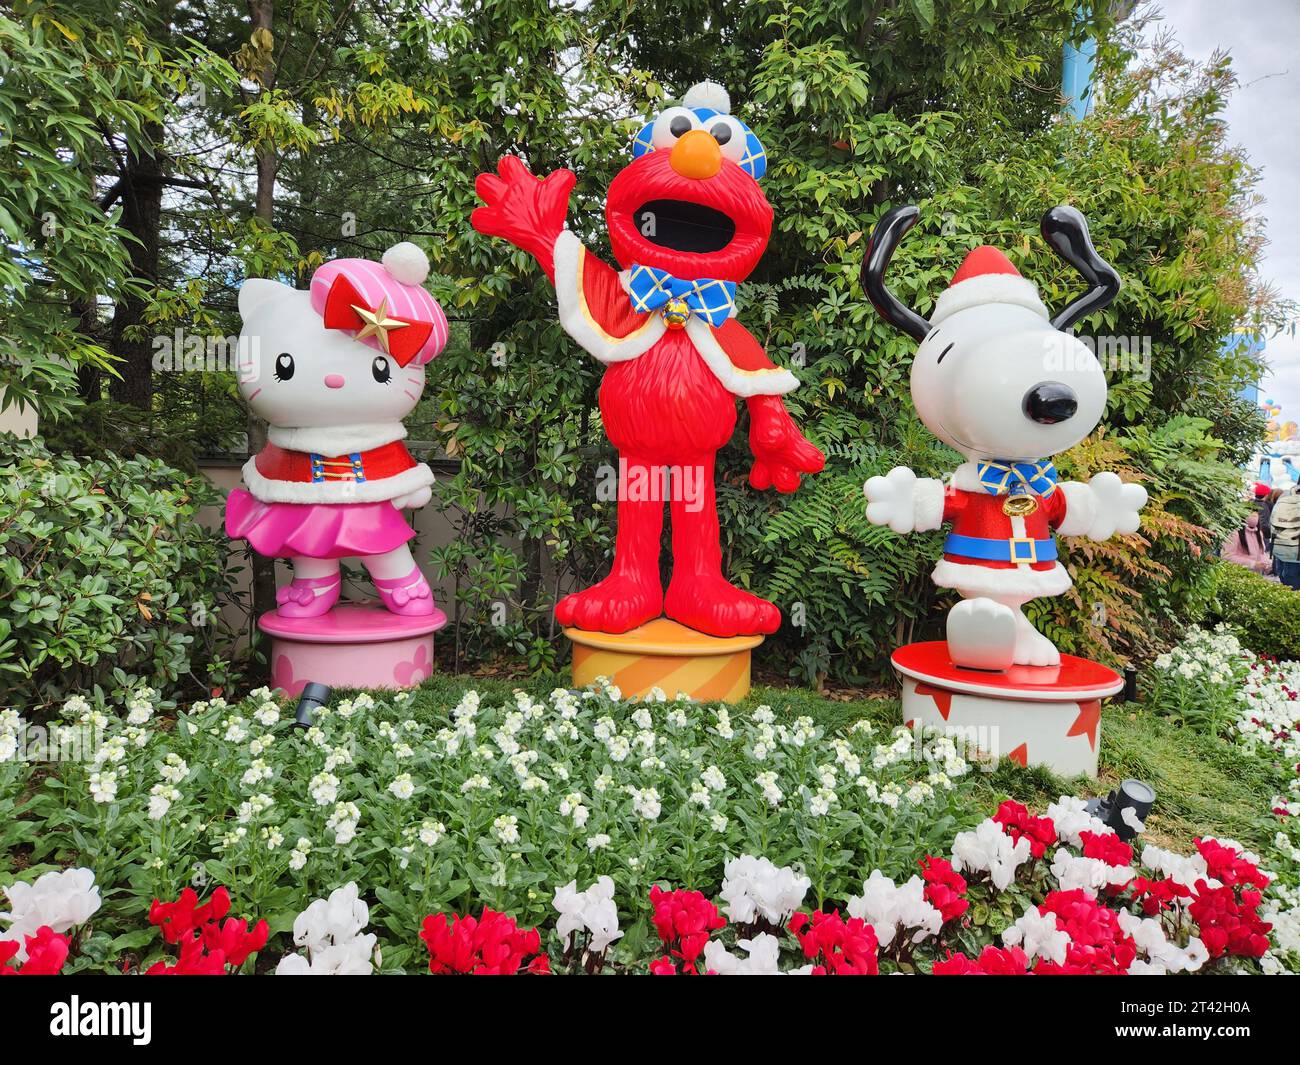 Famose statue di Elmo il Muppet, Snoopy Dog e Hello Kitty negli Universal Studios, Giappone Foto Stock